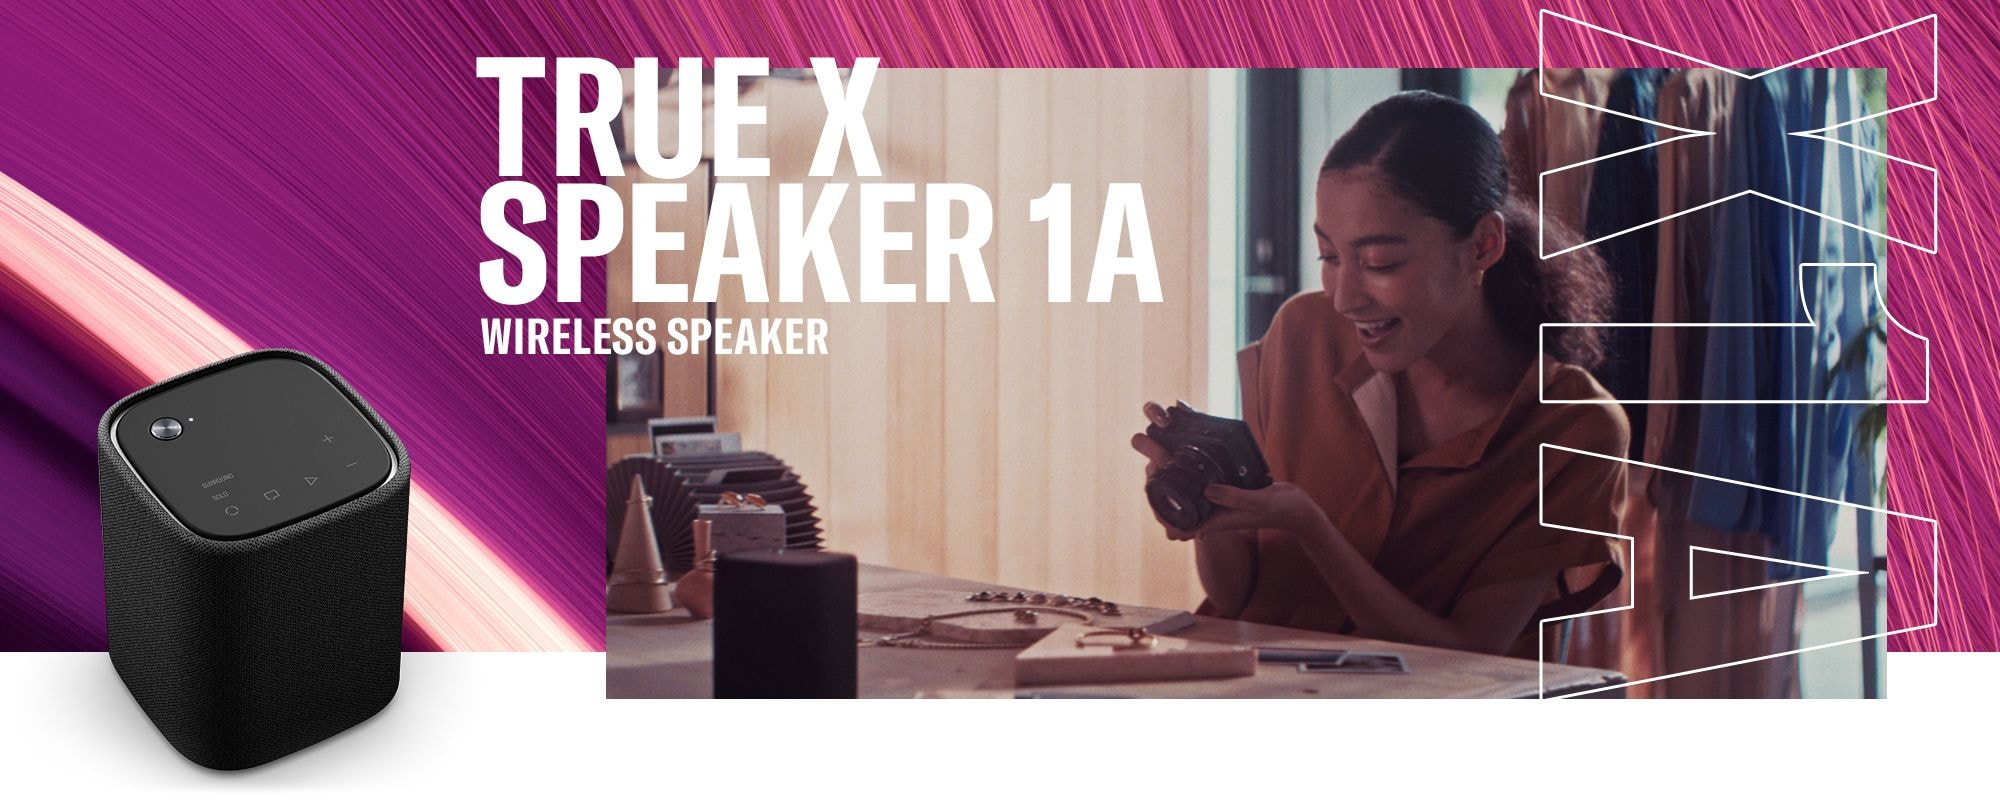 Nur für begrenzte Zeit True X Speaker USA 1A Speaker - Portable Yamaha Surround